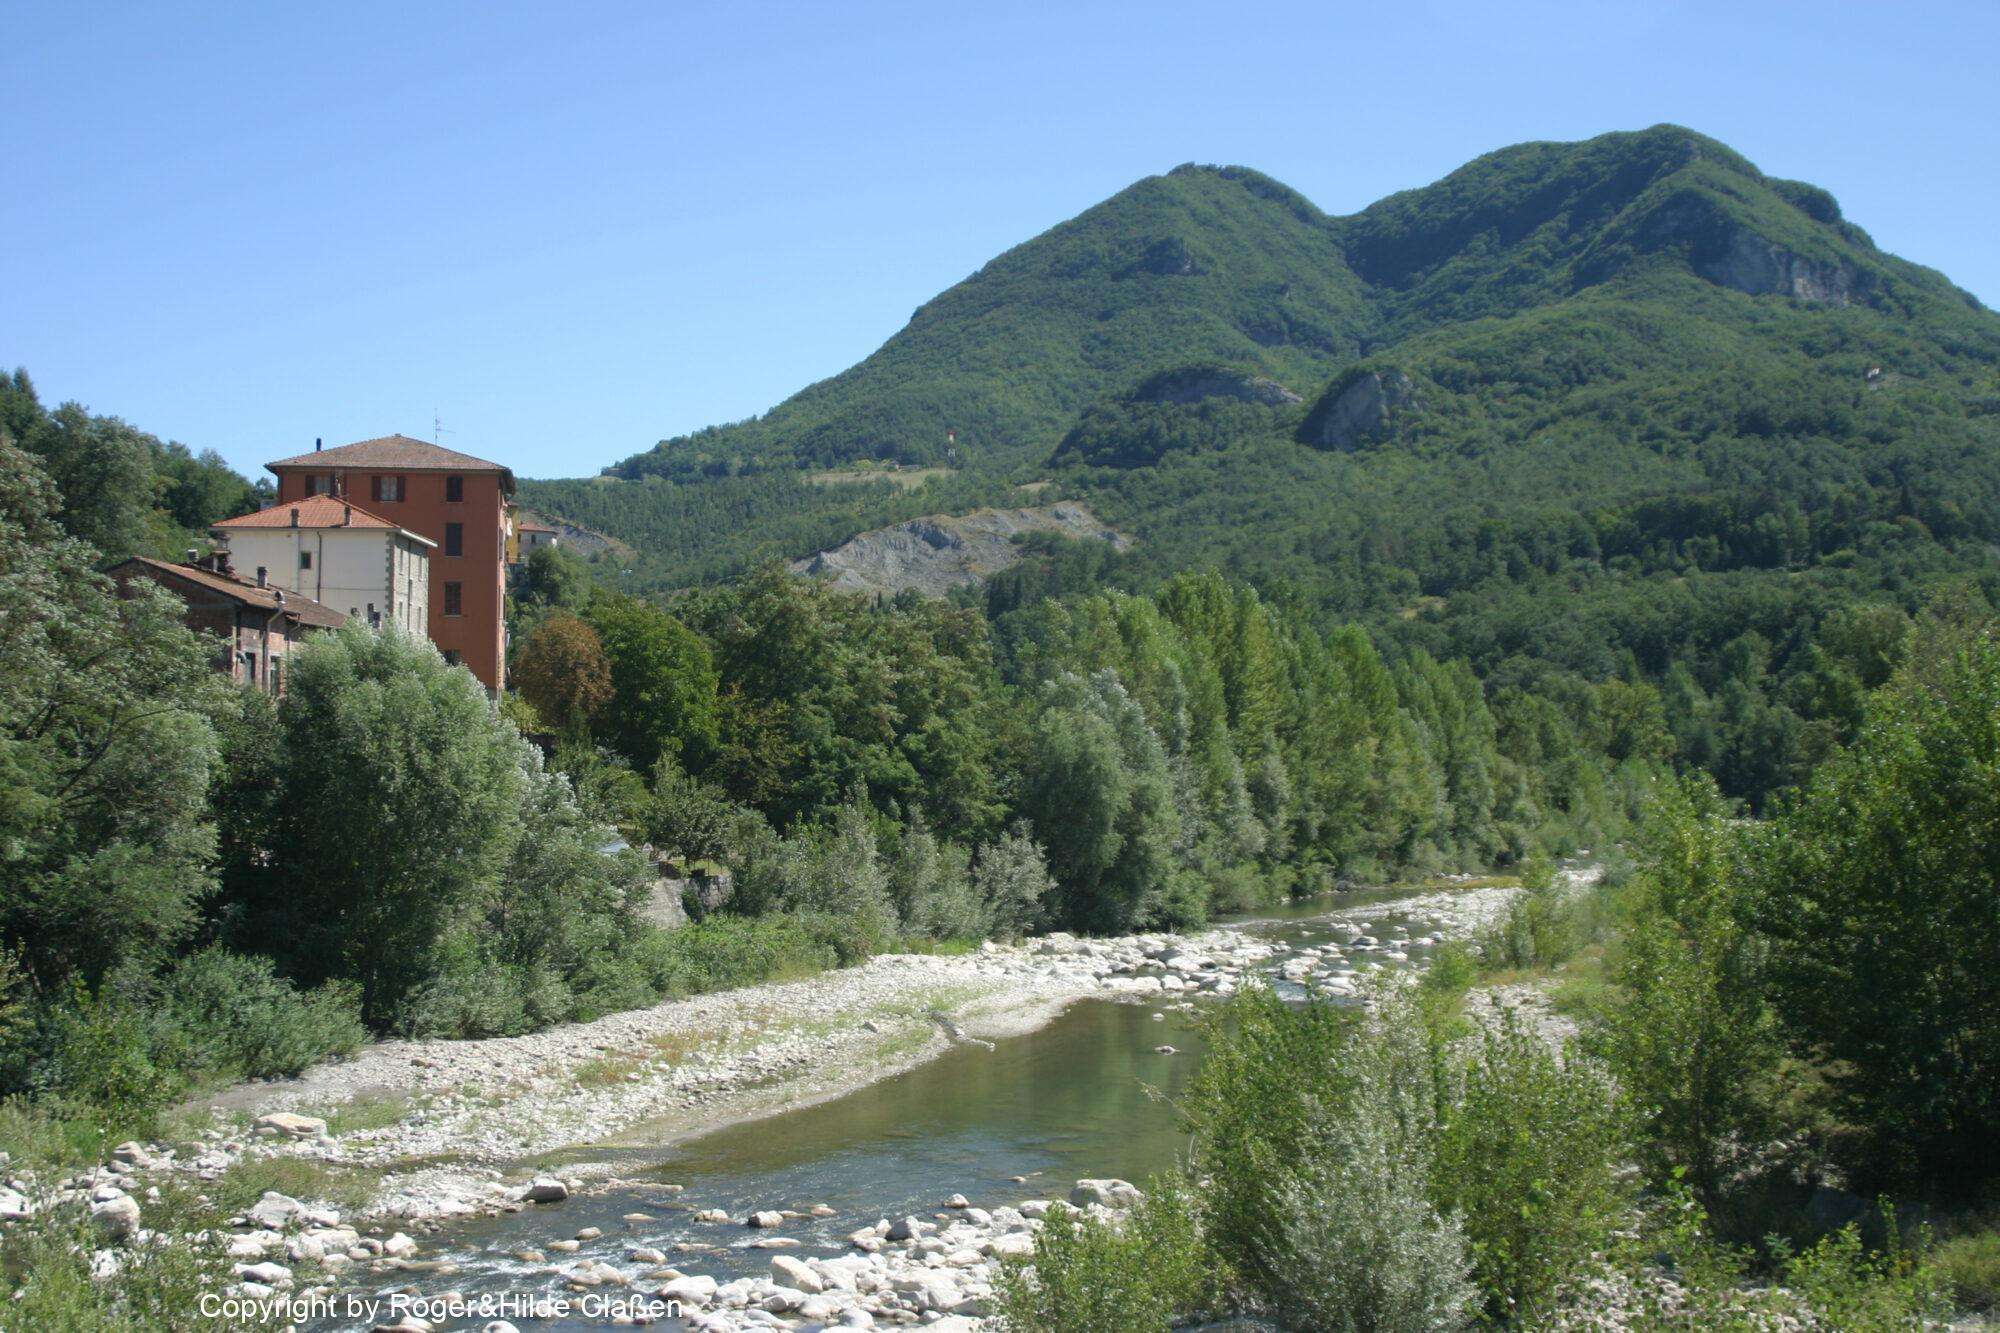 Der Berg Montovolo in der Provinz Bologna. Der Fluss im Vordergrund ist der Reno. Er gehört zum Provinzpark von Montovolo-Vigese.